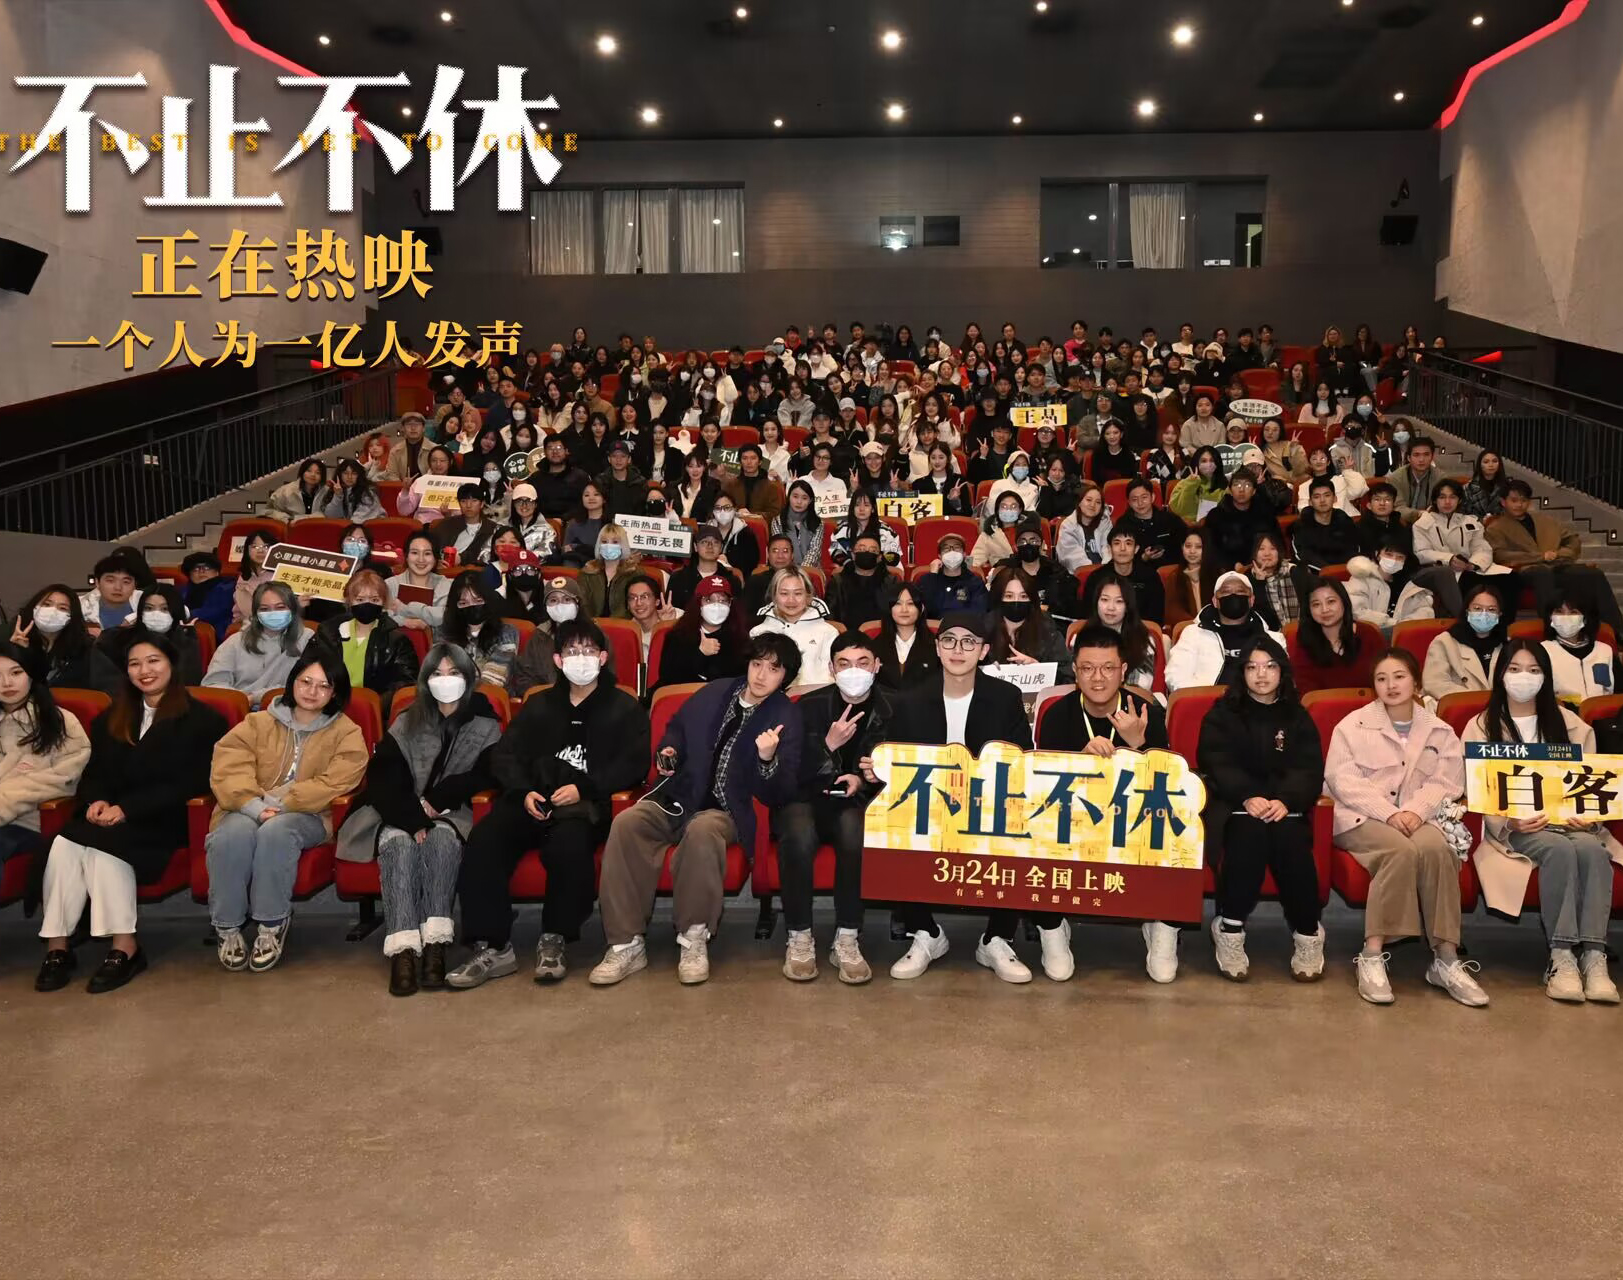 《不止不休》上海校园路演  观众赞电影真实鼓舞人心